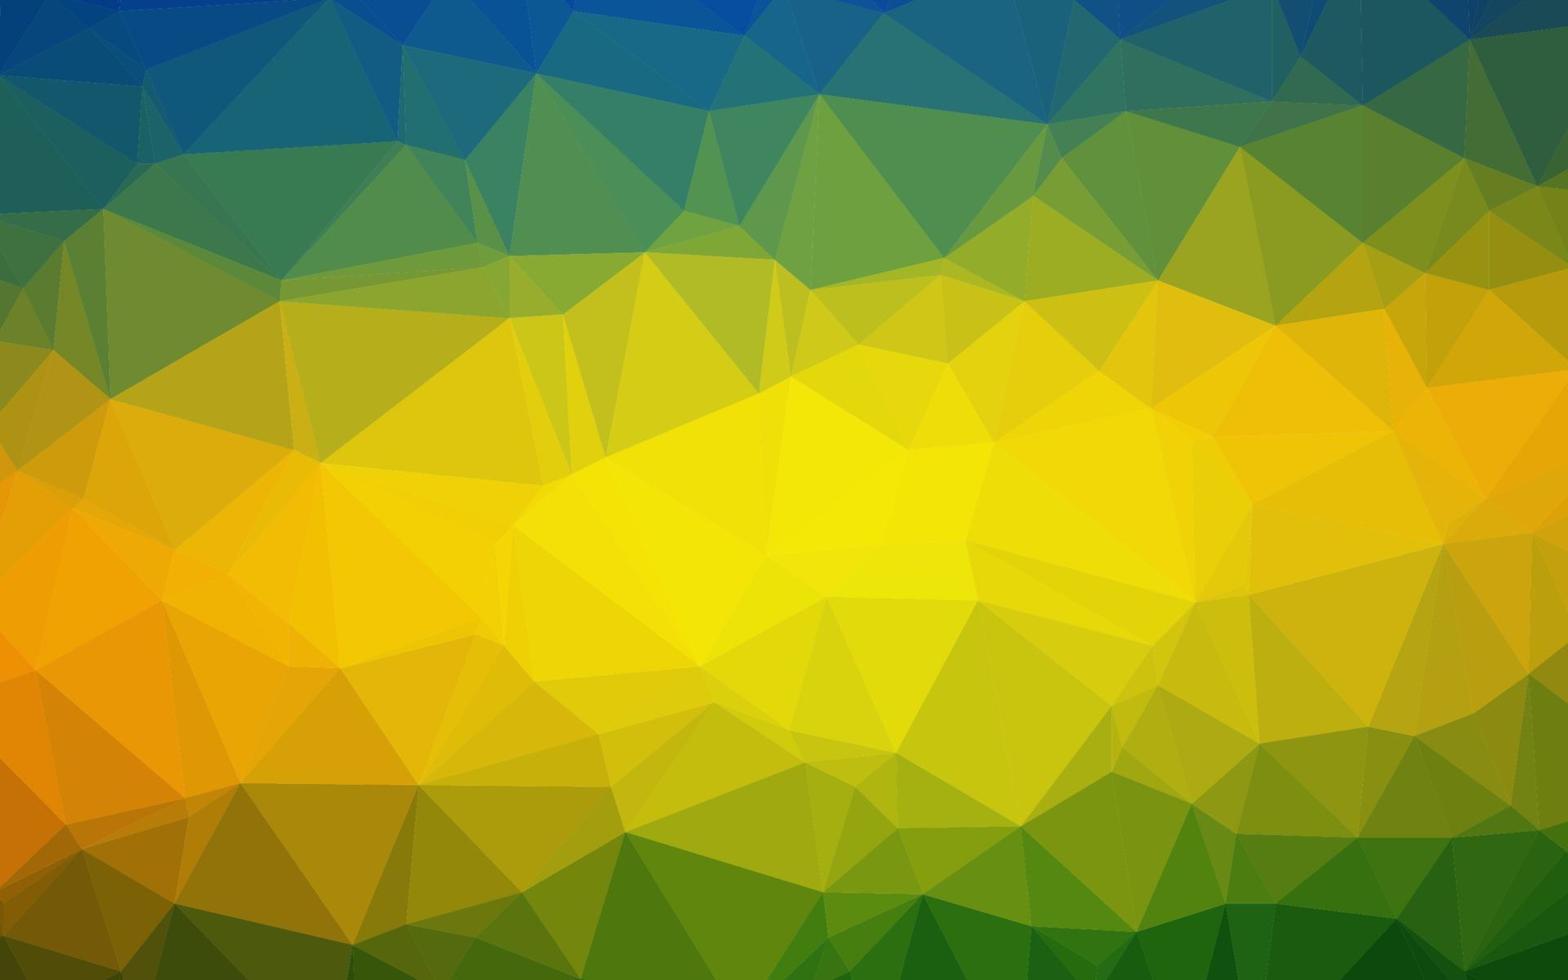 capa poligonal abstrata de vetor azul escuro, amarelo.